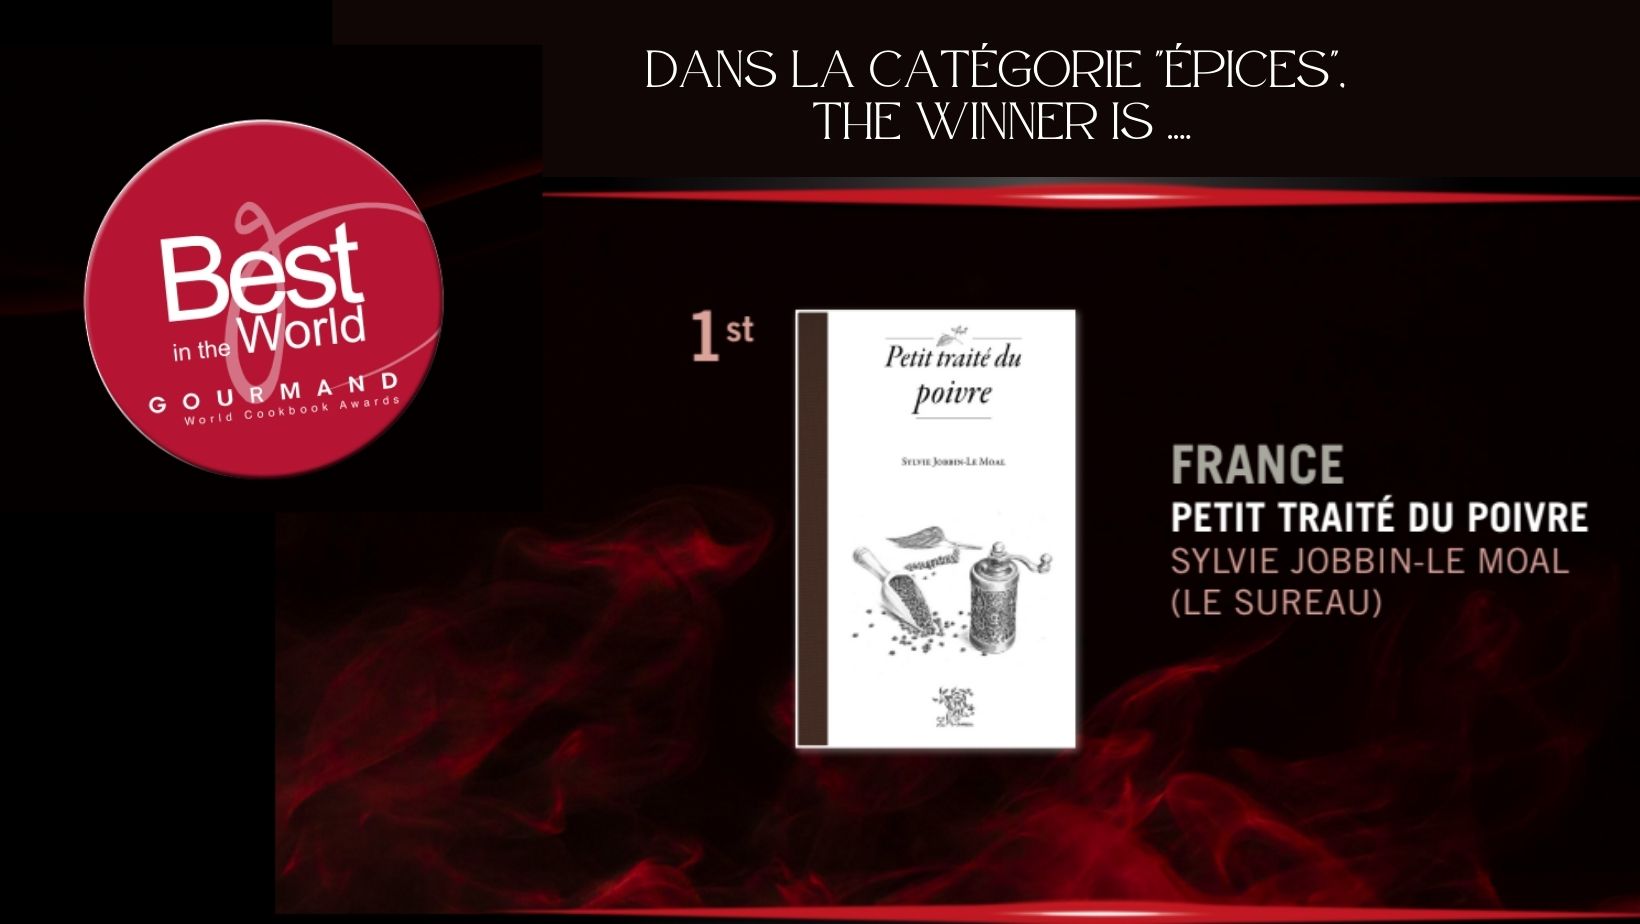 Dans la catégorie épices, the winner is .....